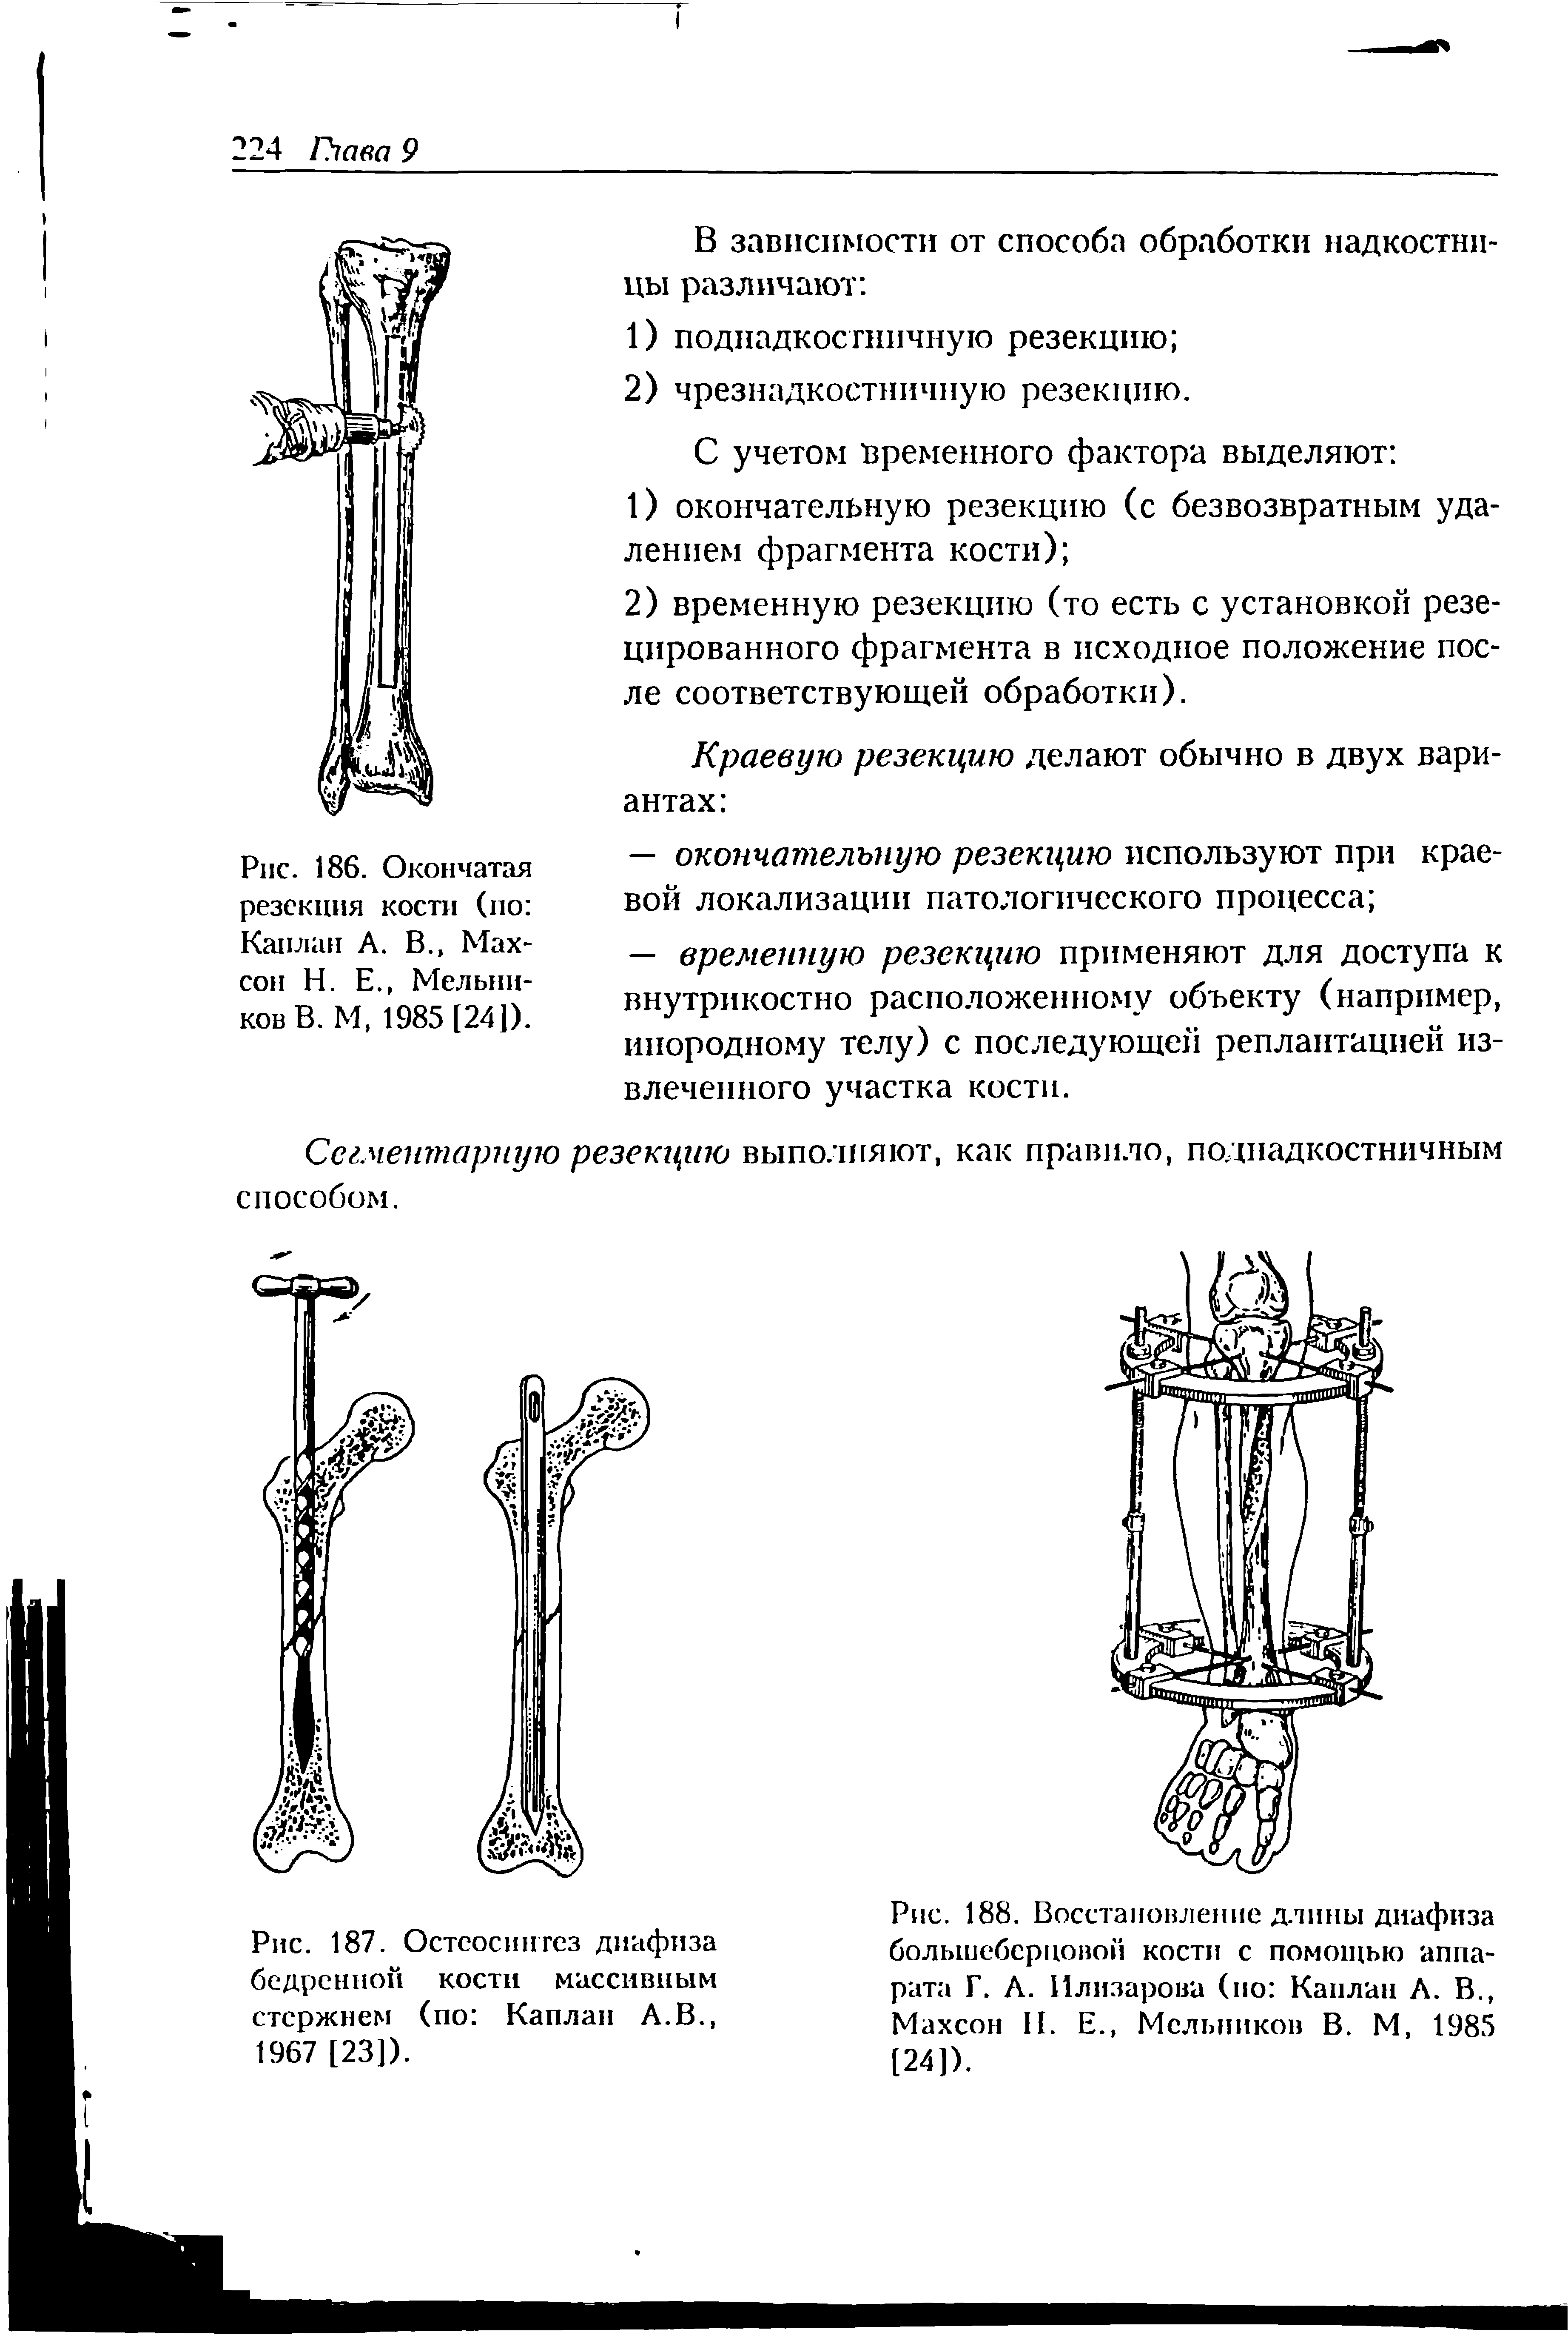 Рис. 187. Остеосинтез диафиза бедренной кости массивным стержнем (по Каплан А.В., 1967 [23]).